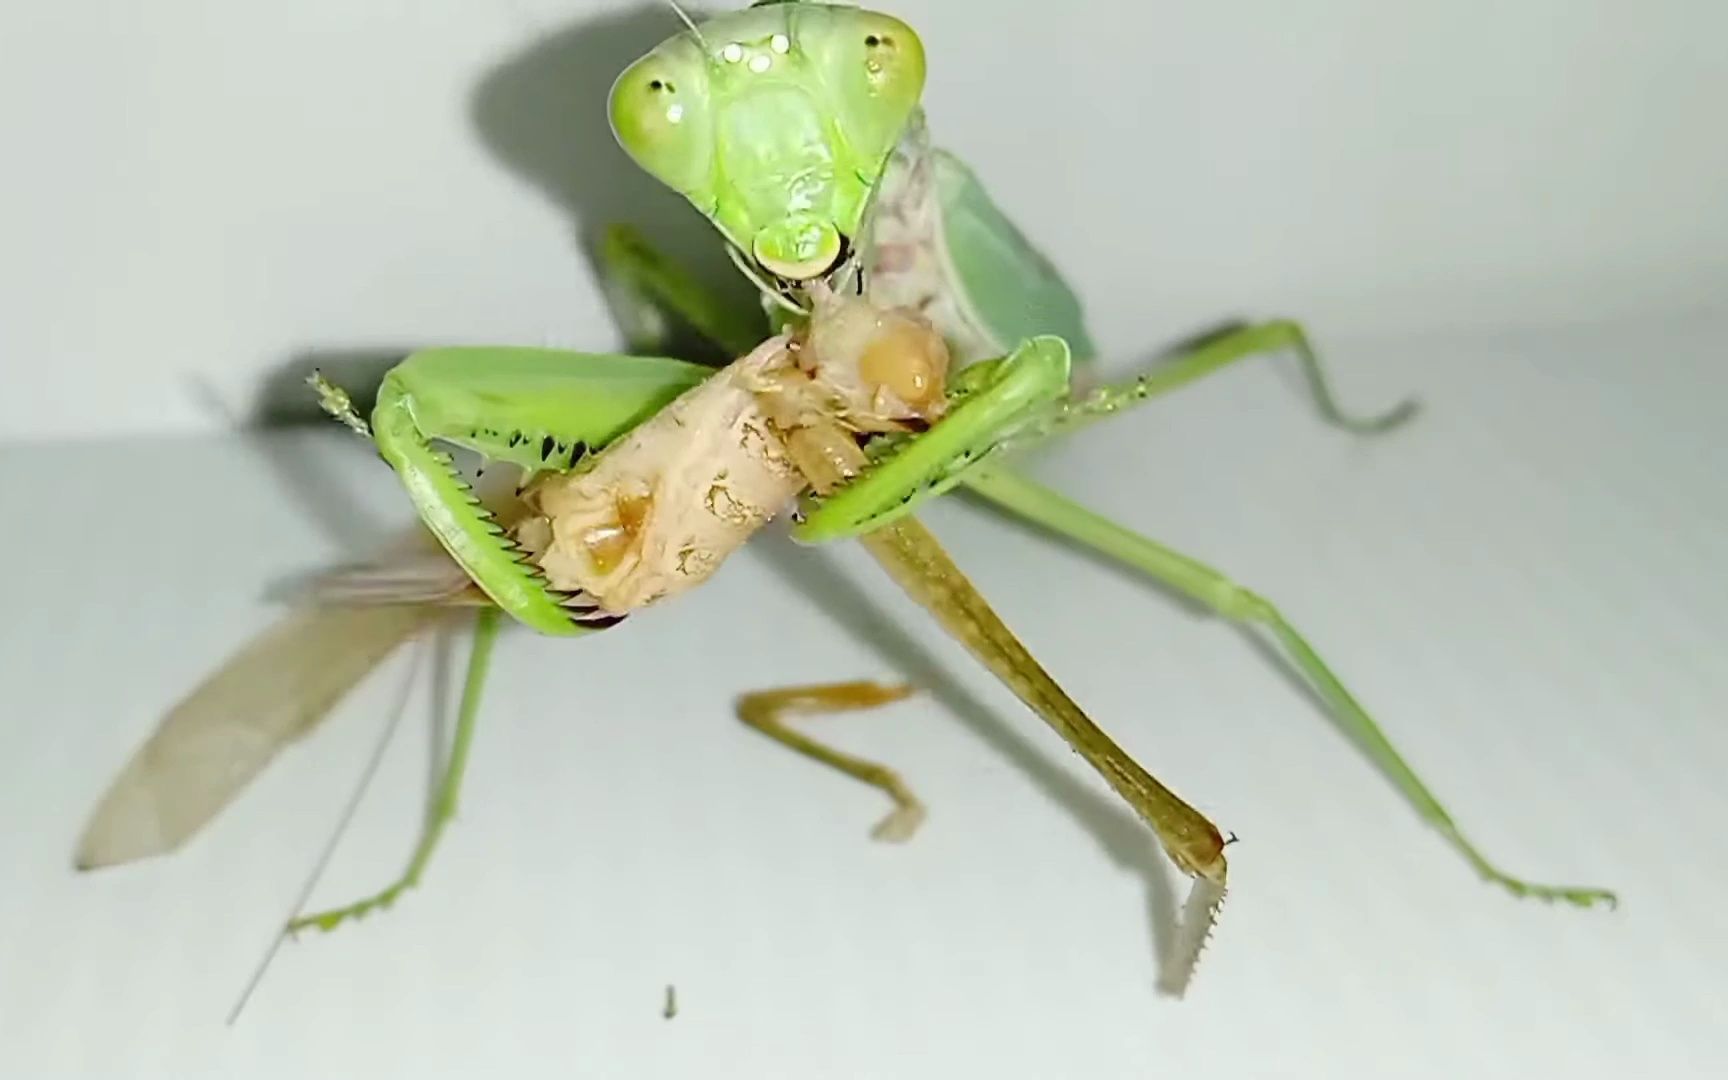 螳螂vs各种昆虫图片